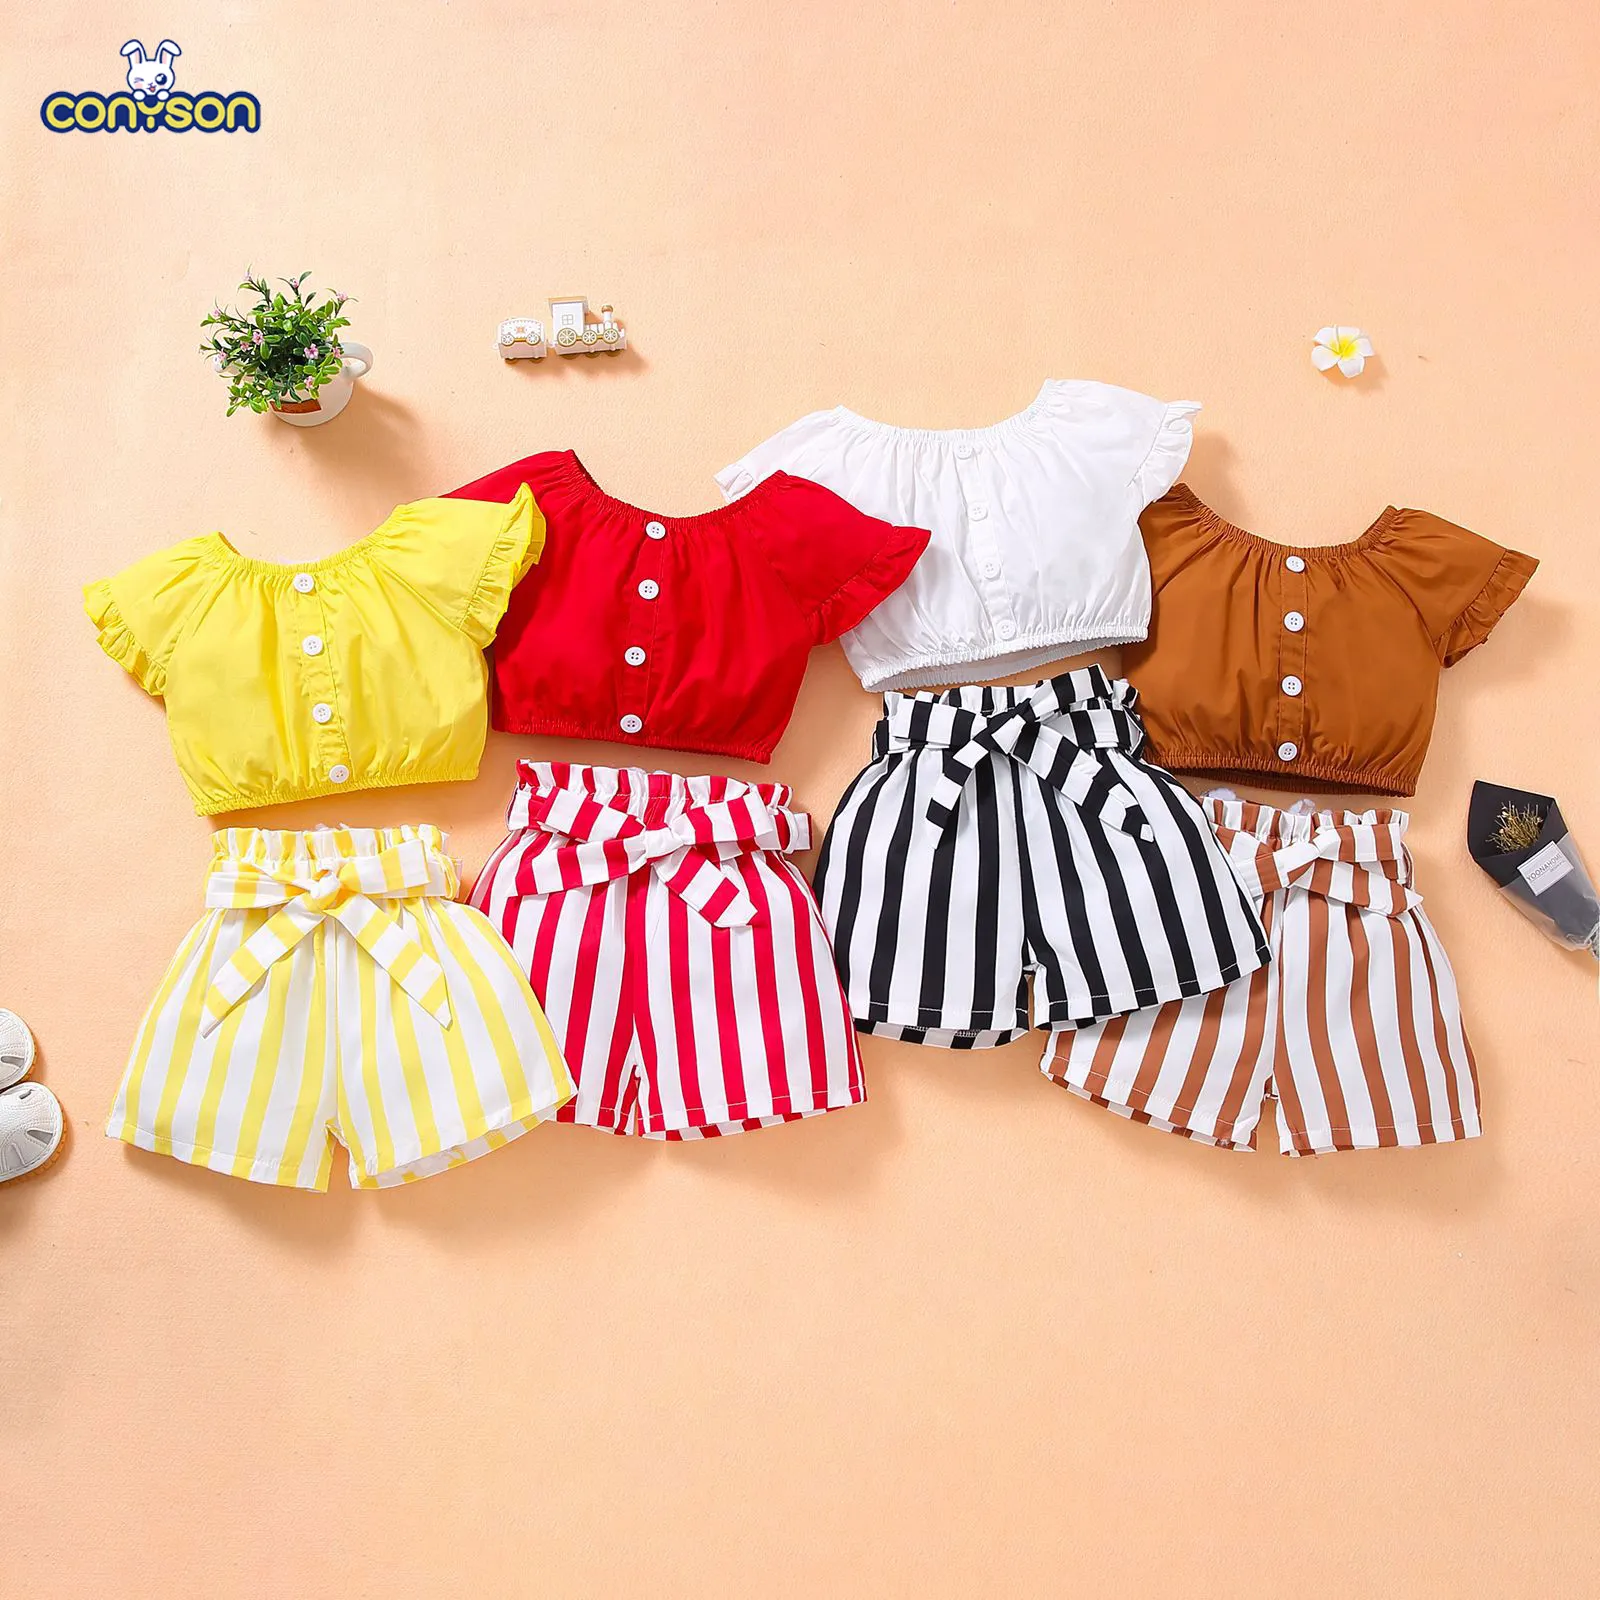 Conyson-Camiseta y pantalones cortos a rayas para niños, conjuntos de ropa para niñas pequeñas, 2 uds.